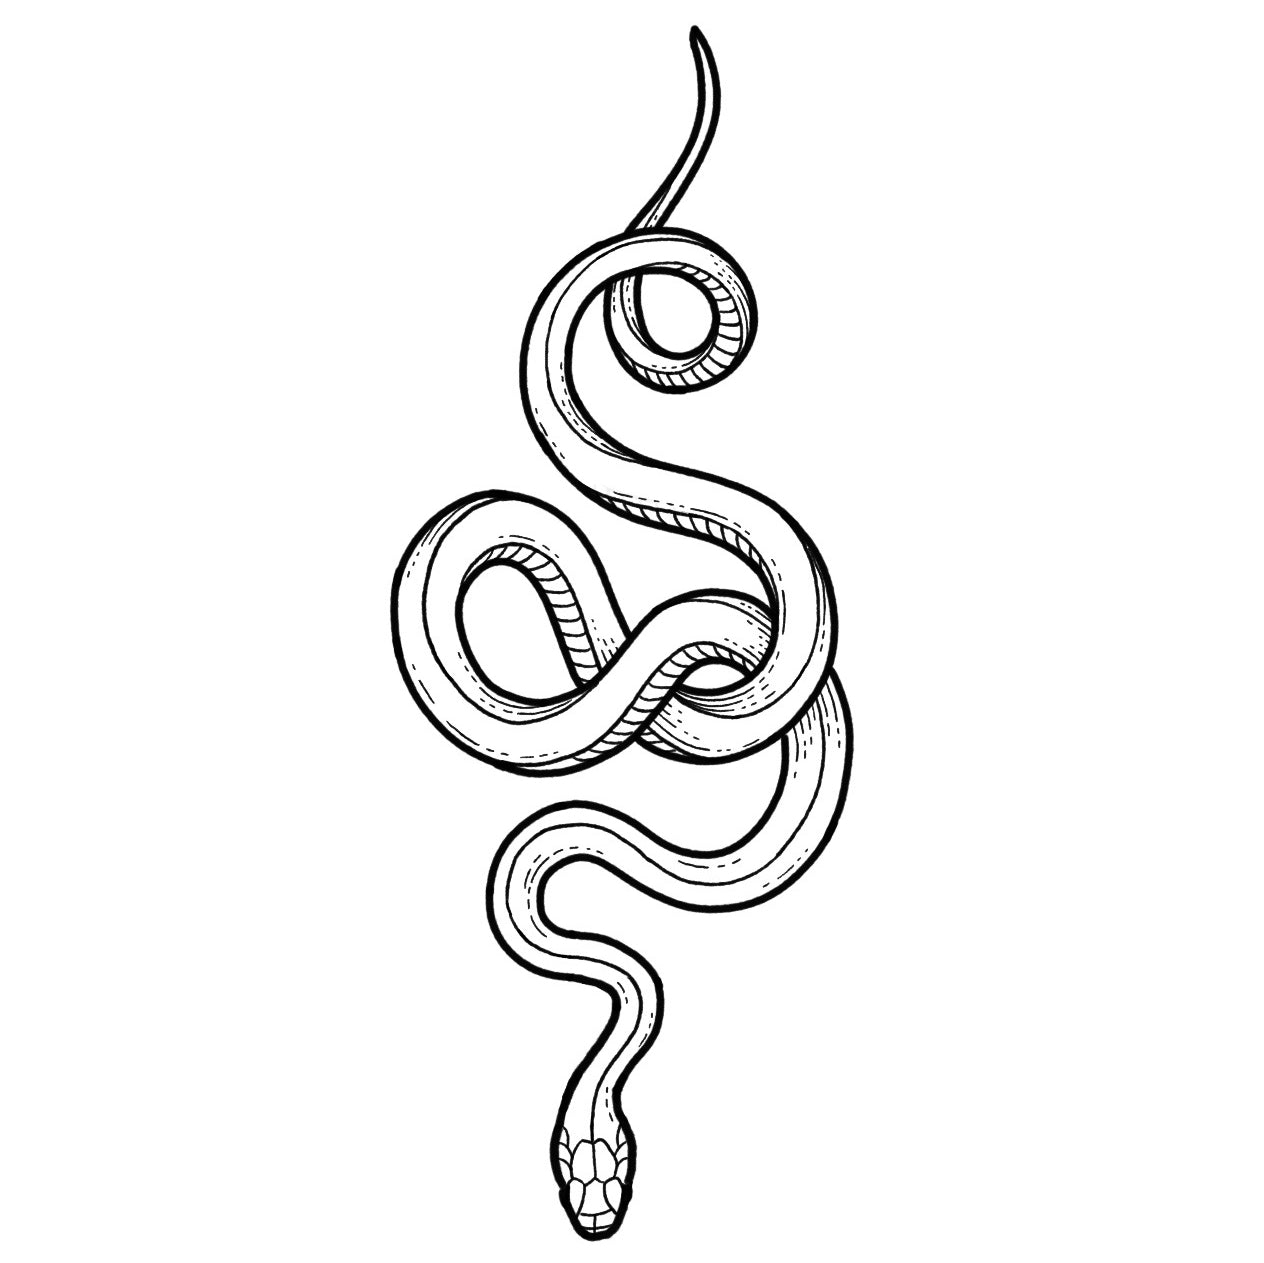 Snake 3 - Blackwork